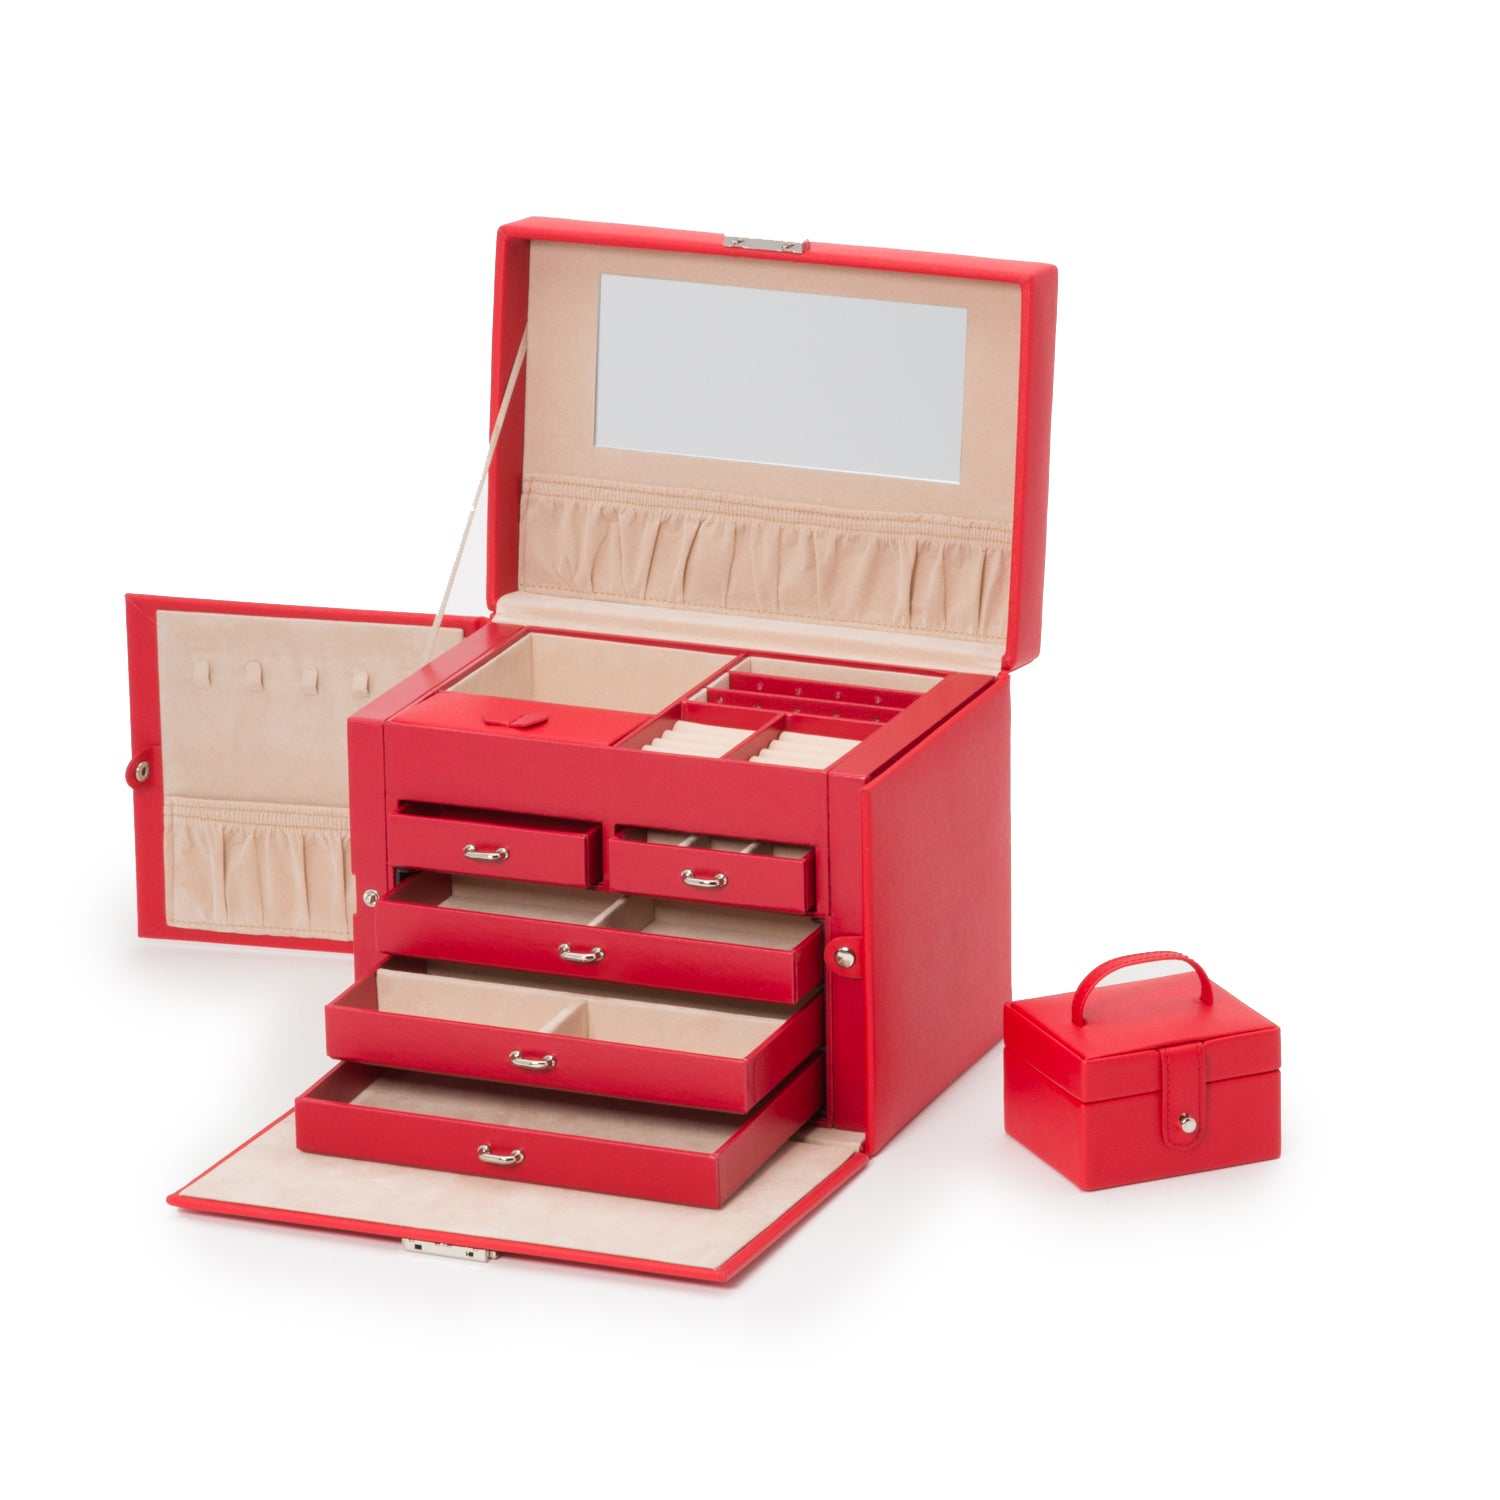 Watch Avenue UKJewellery BoxWolf Heritage Medium Jewellery Box Red Saffiano 280114Watch Avenue UK